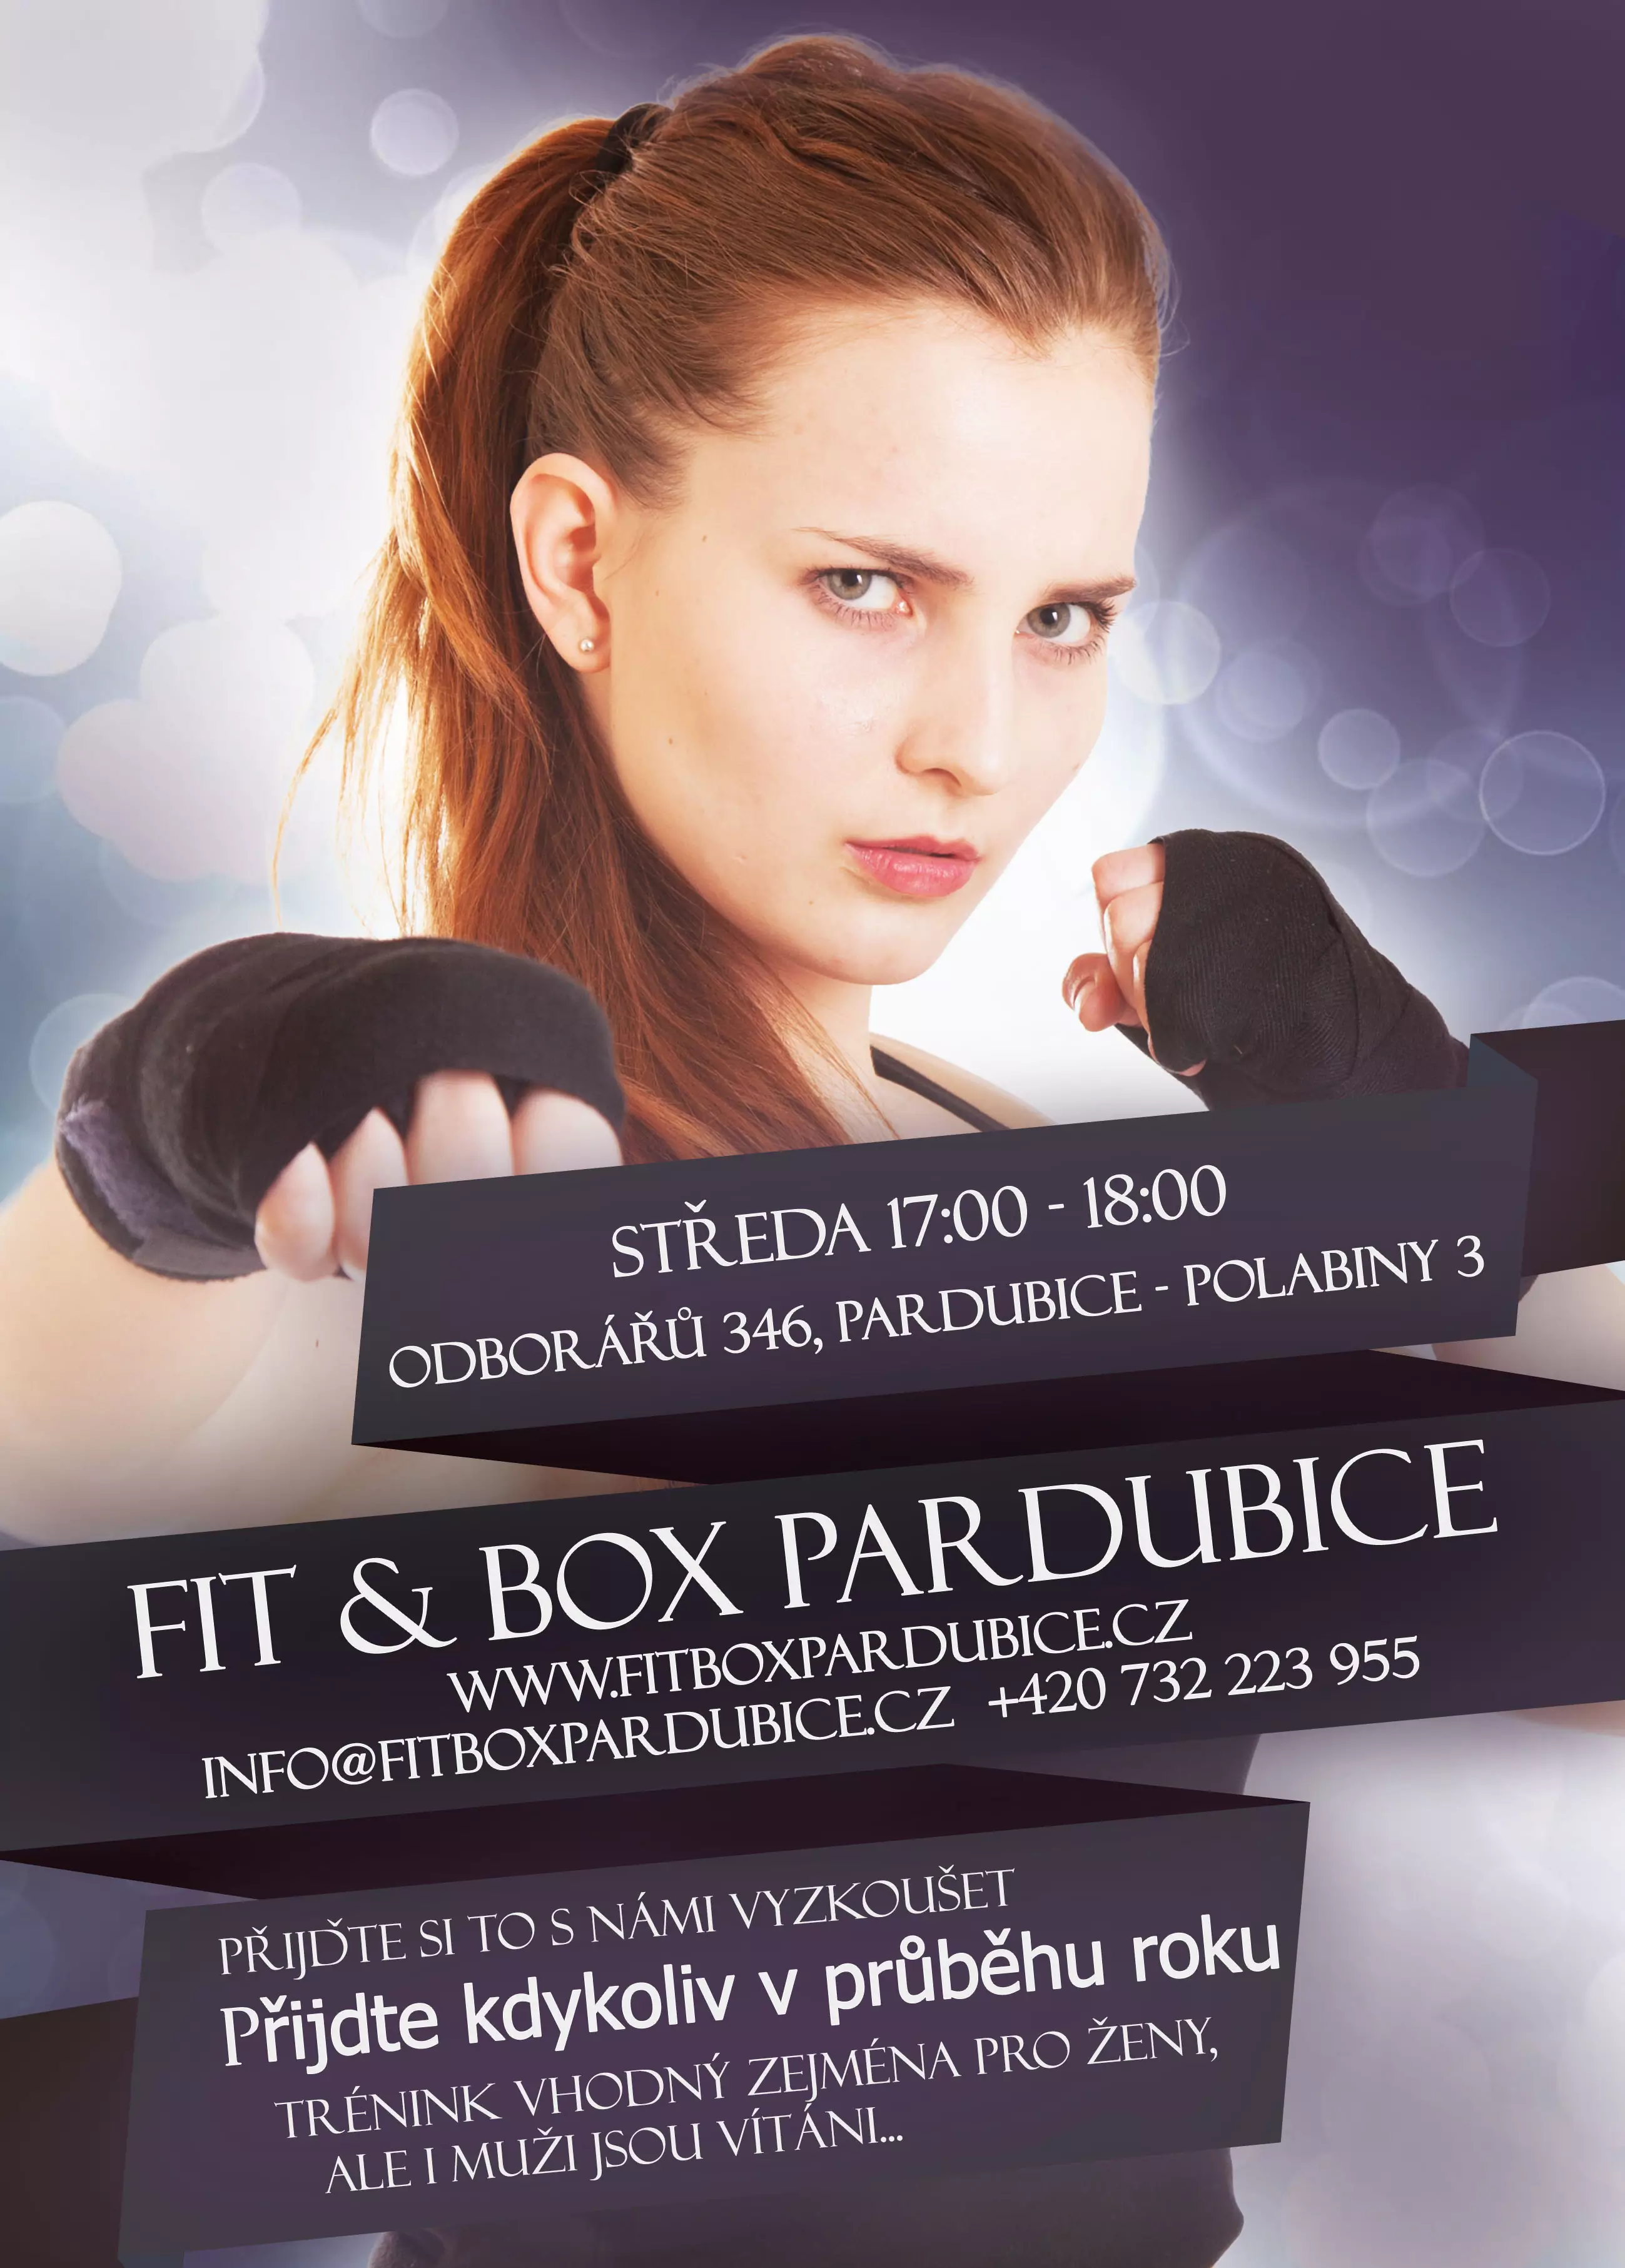 Fit & Box Pardubice 2014/2015